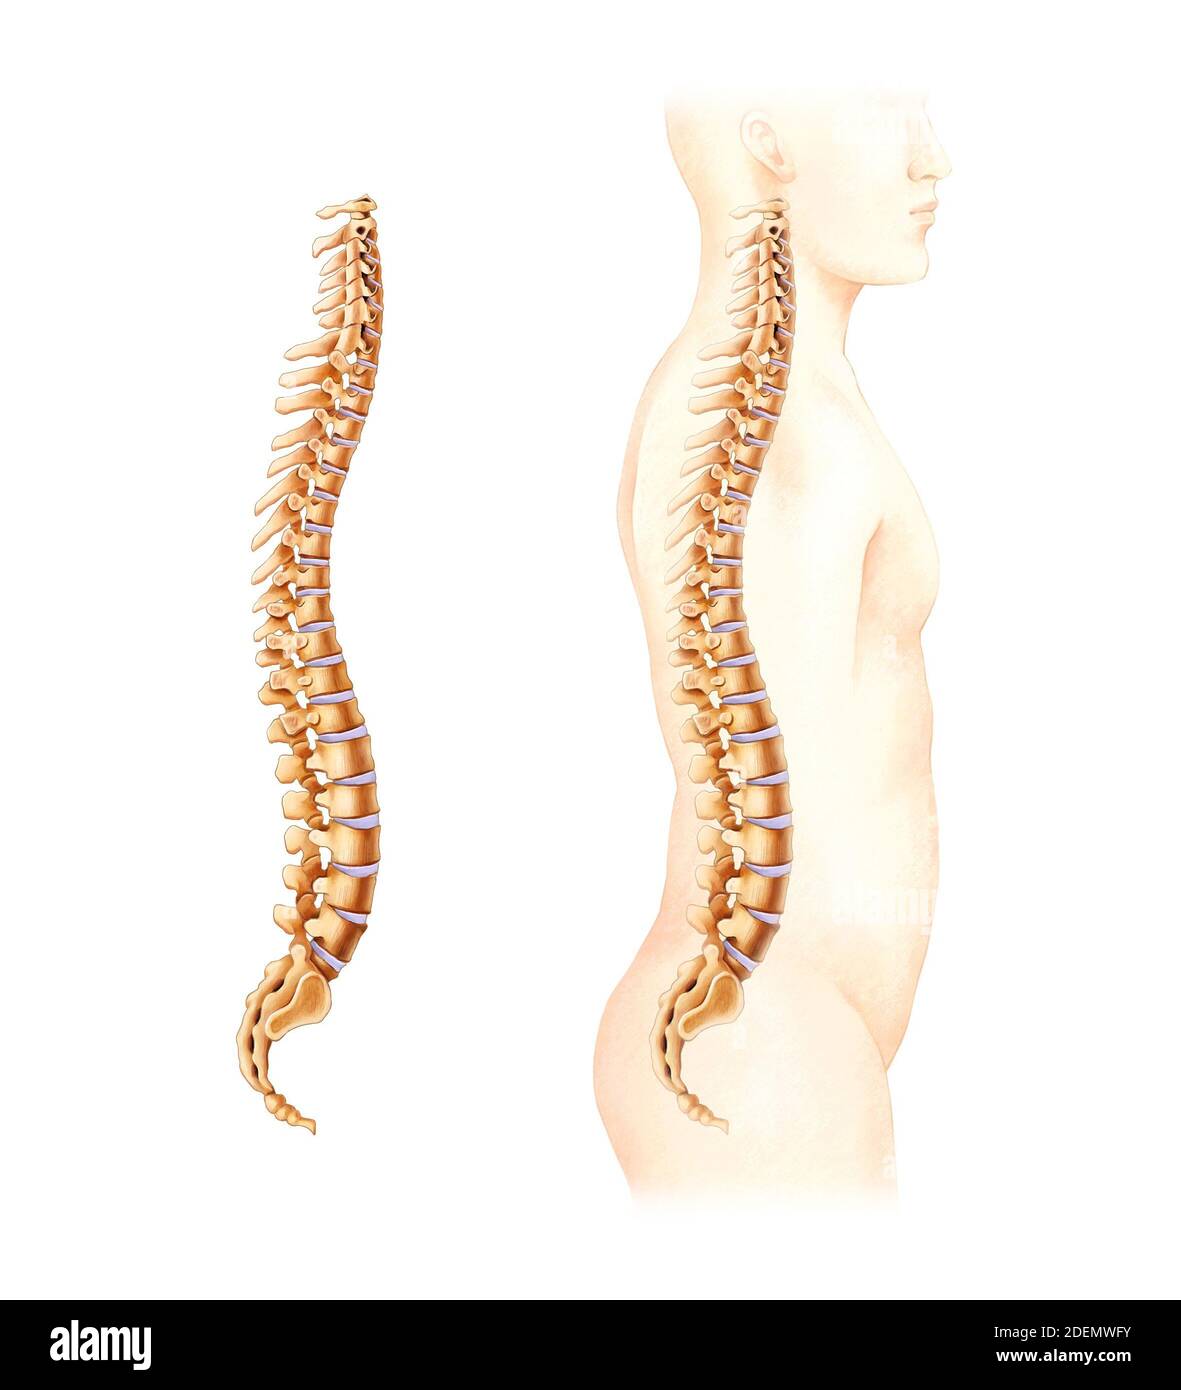 anatomía del disco espinal y lumbar Foto de stock